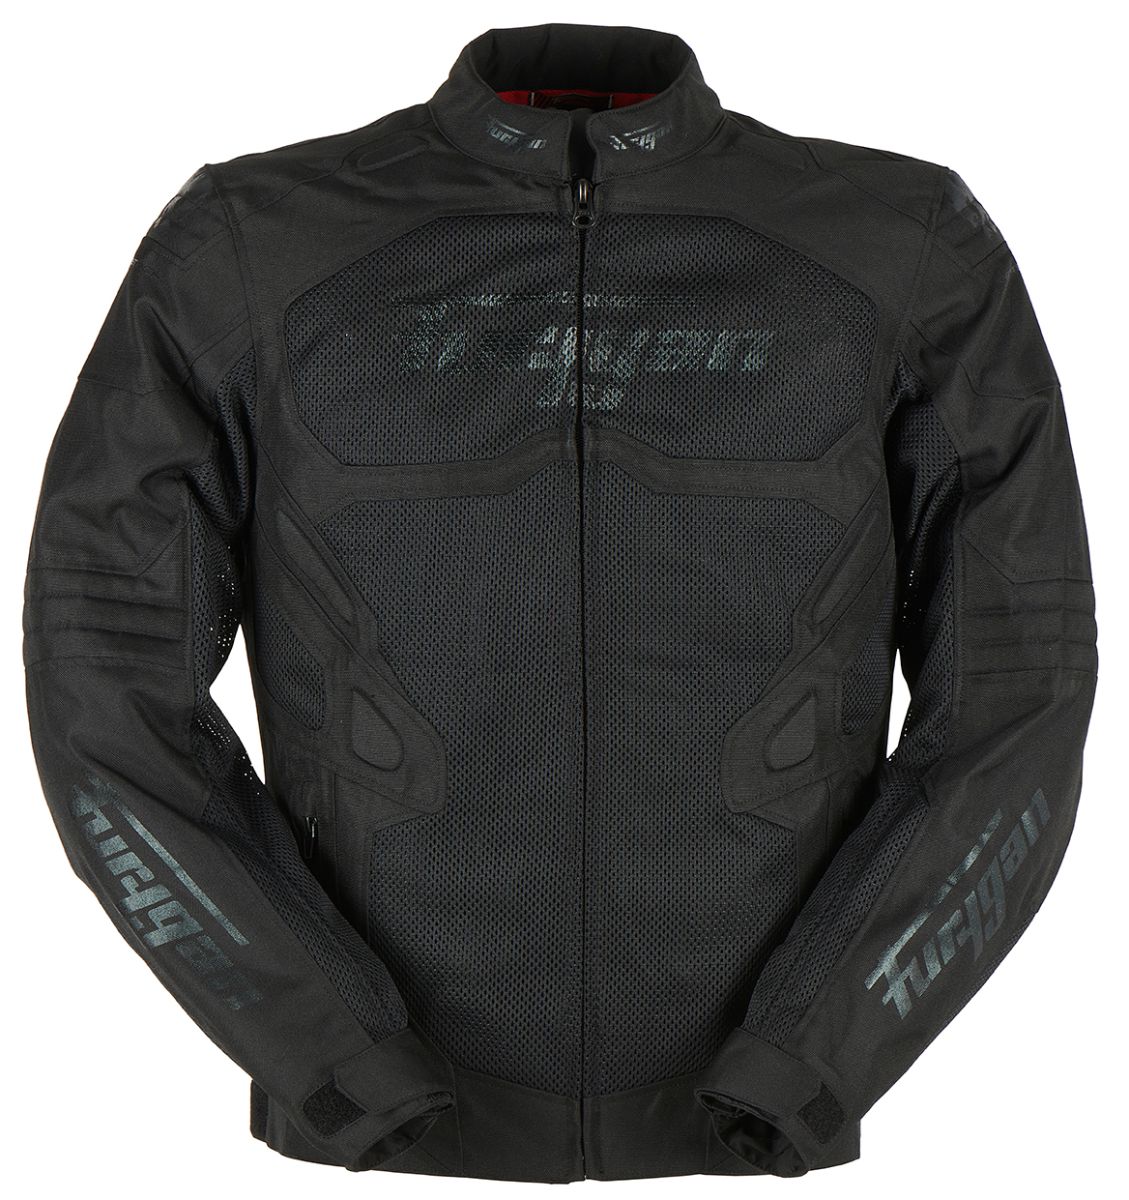 Image of Furygan Atom Vented Evo Jacket Black Size S EN